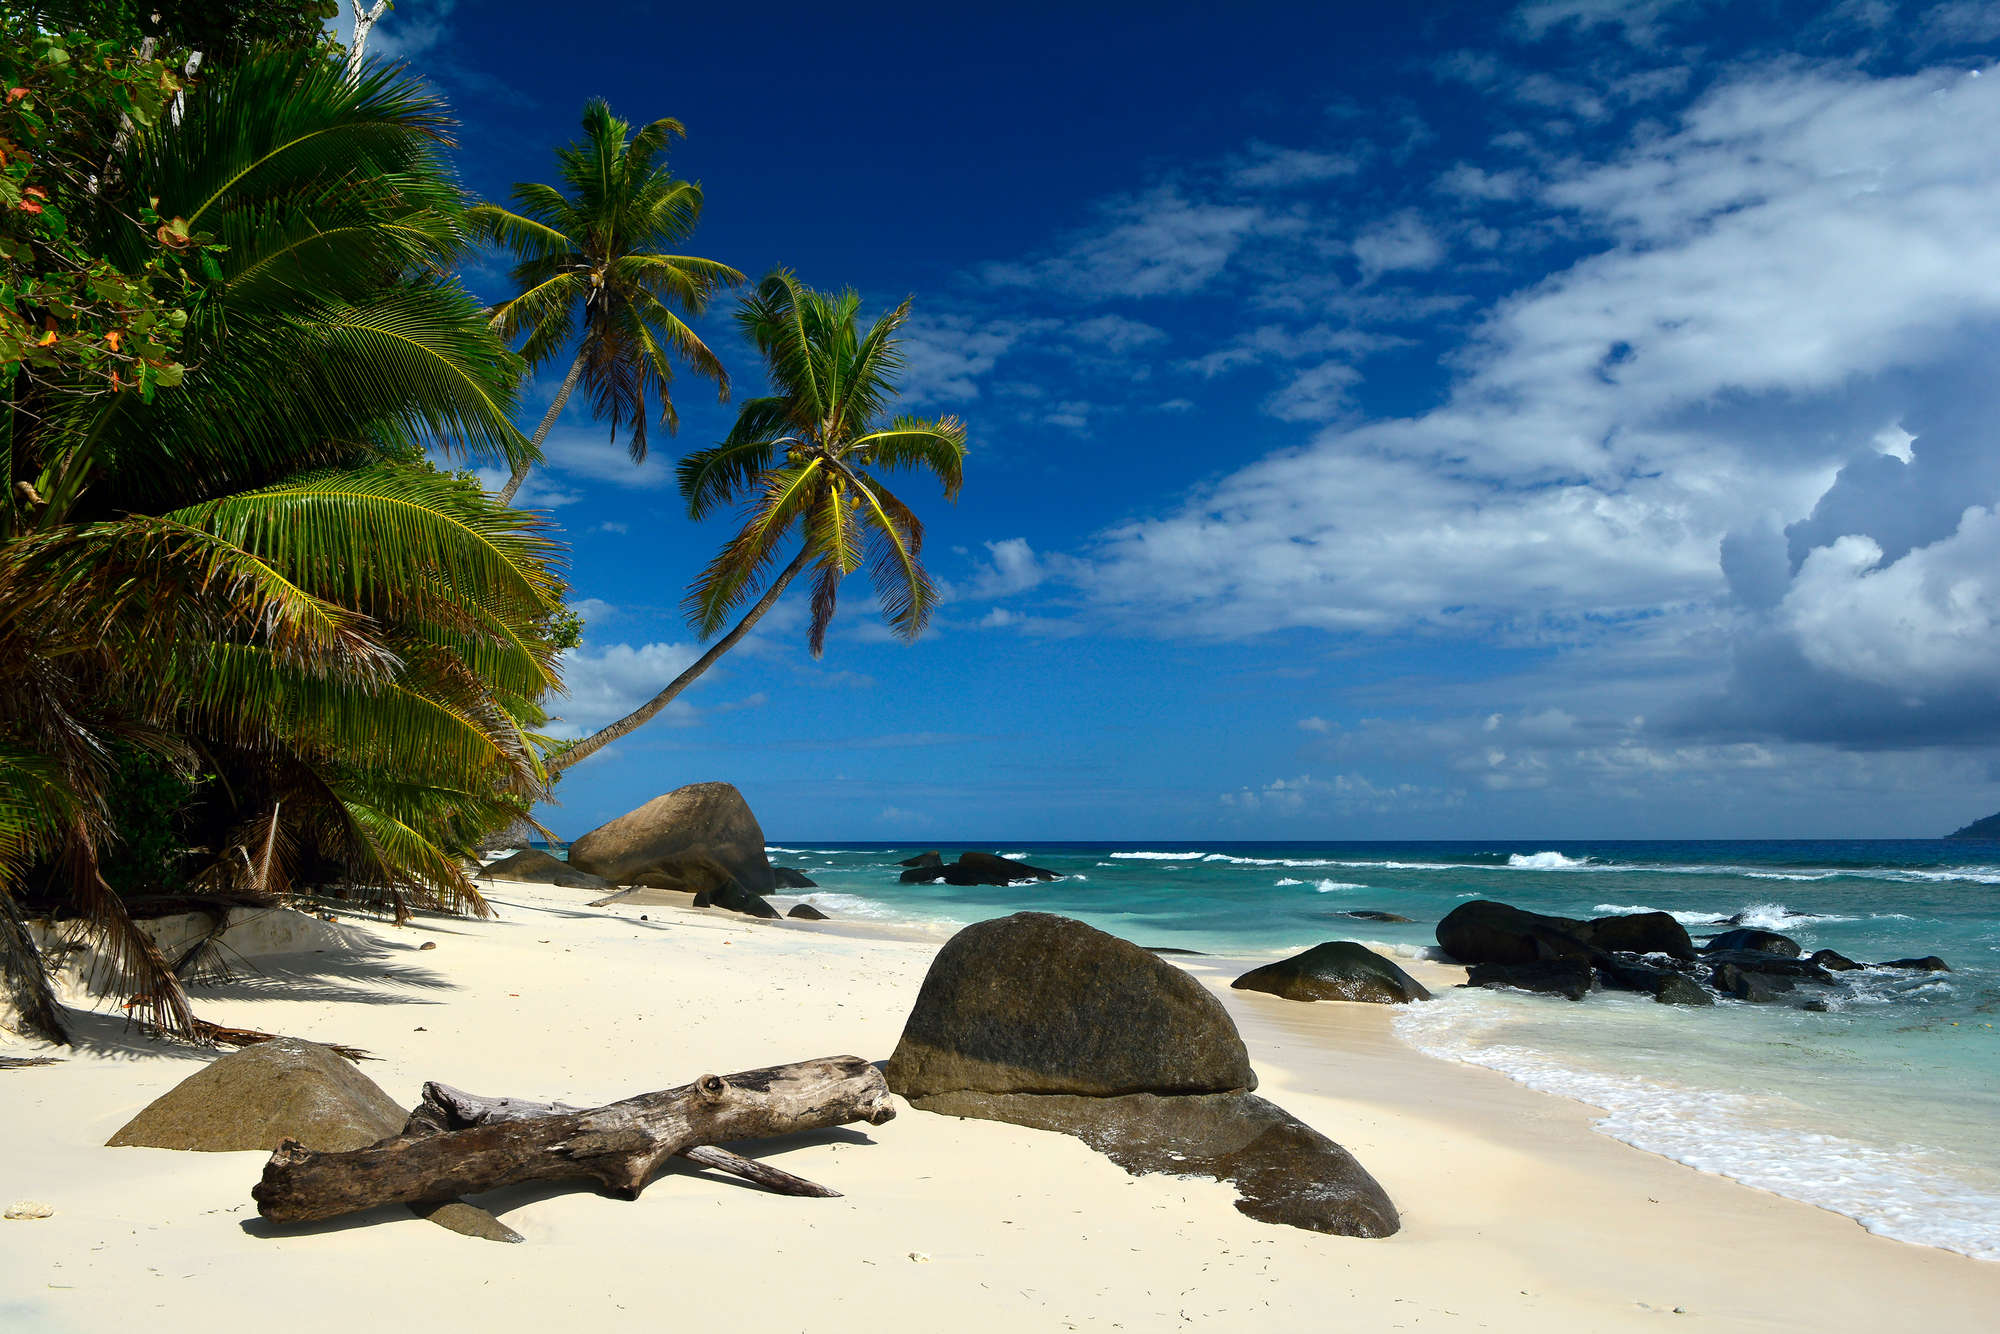             Papel Pintado Mares del Sur Seychelles Palmeras y Playa sobre lana de alta calidad
        